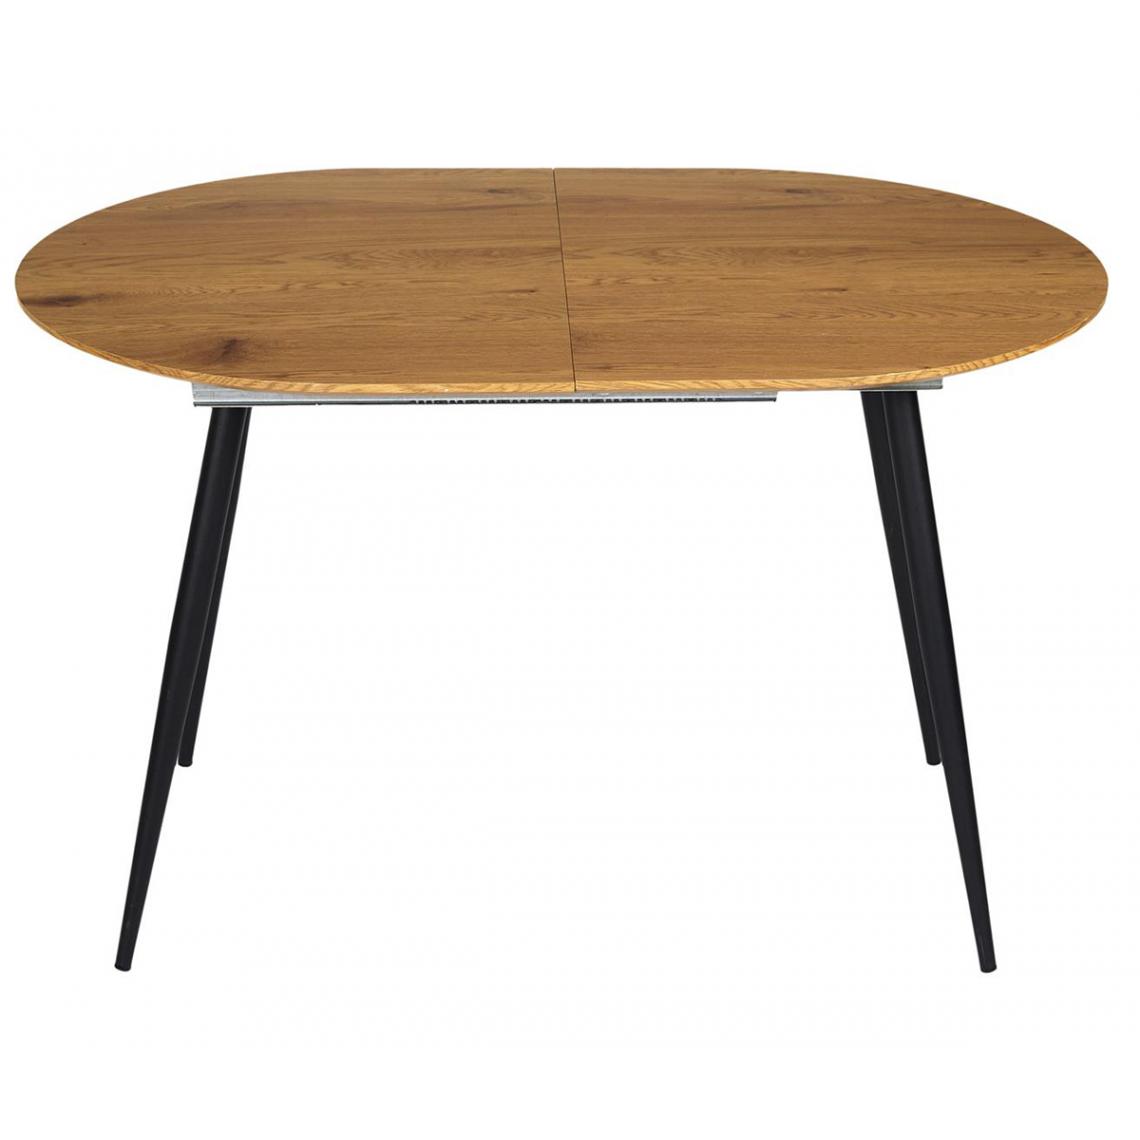 Pegane - Table à manger extensible en bois et métal coloris marron - Longueur 120-160 x profondeur 80 x Hauteur 75 cm - Tables à manger